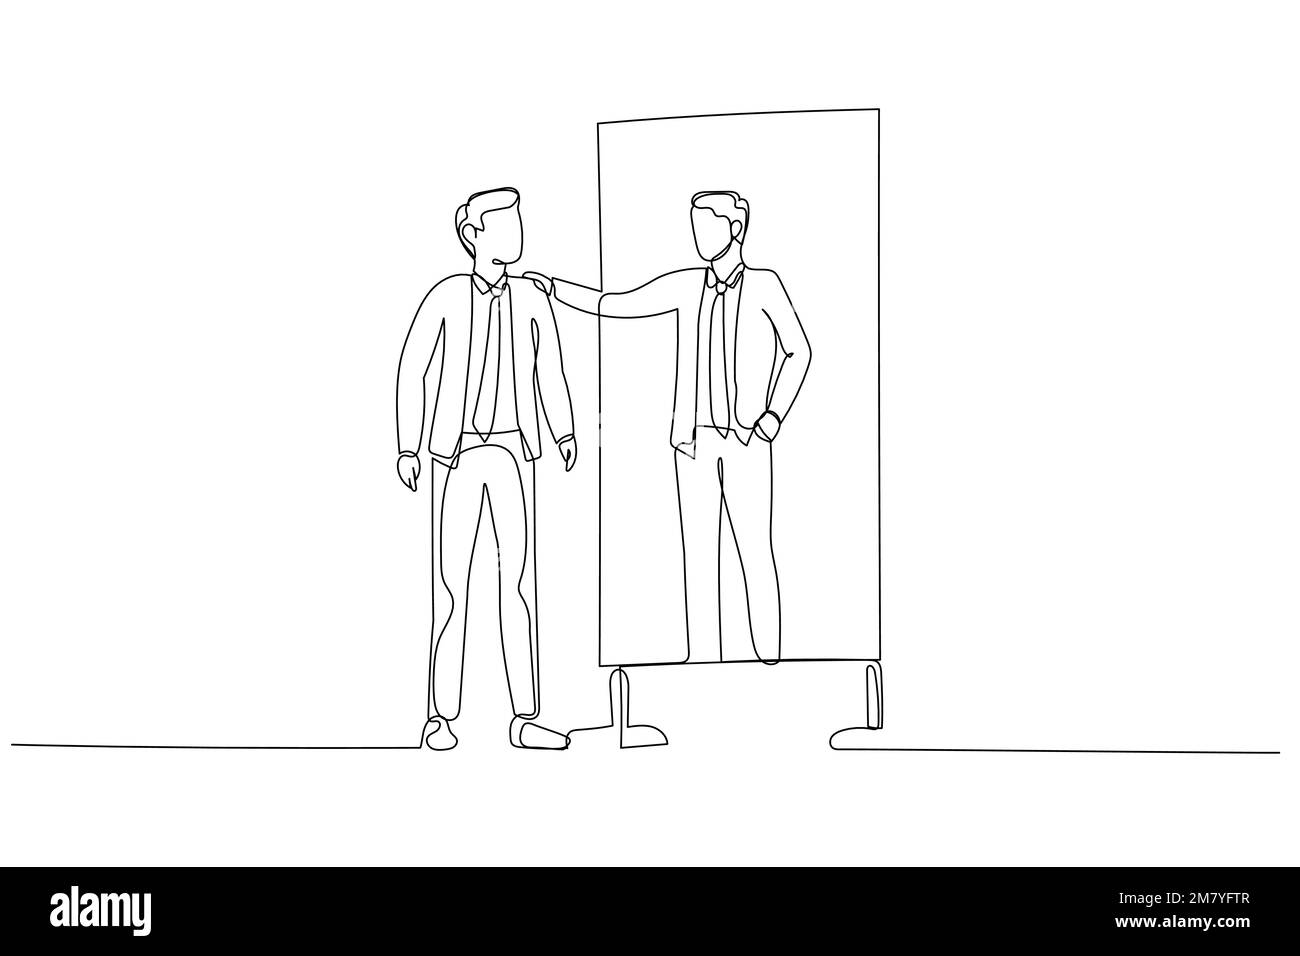 Illustrazione dell'uomo d'affari che guarda nello specchio abbracci il concetto di auto-stima cura di sé. Design di stile artistico a linea singola Illustrazione Vettoriale